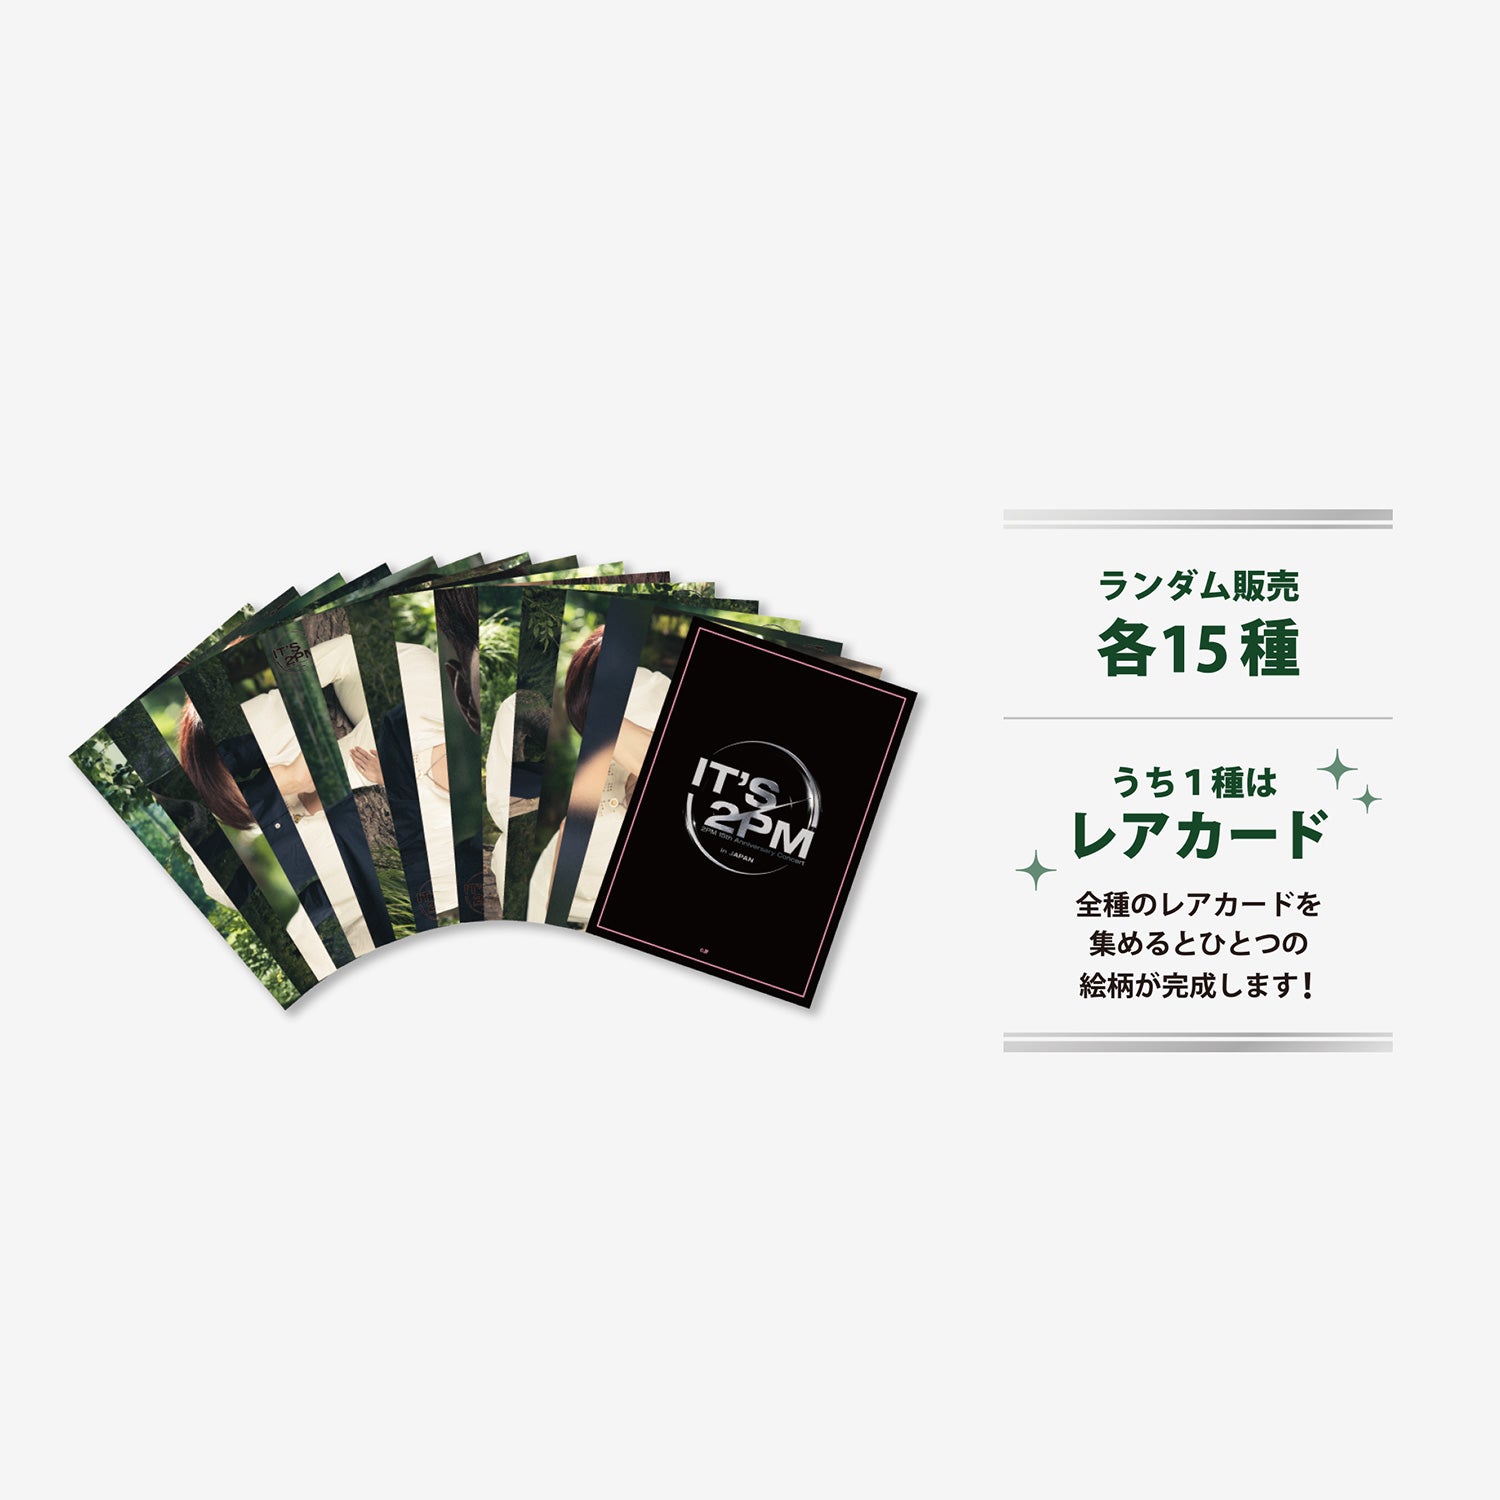 RANDOM TRADING CARD - Jun. K / 2PM『It's 2PM』